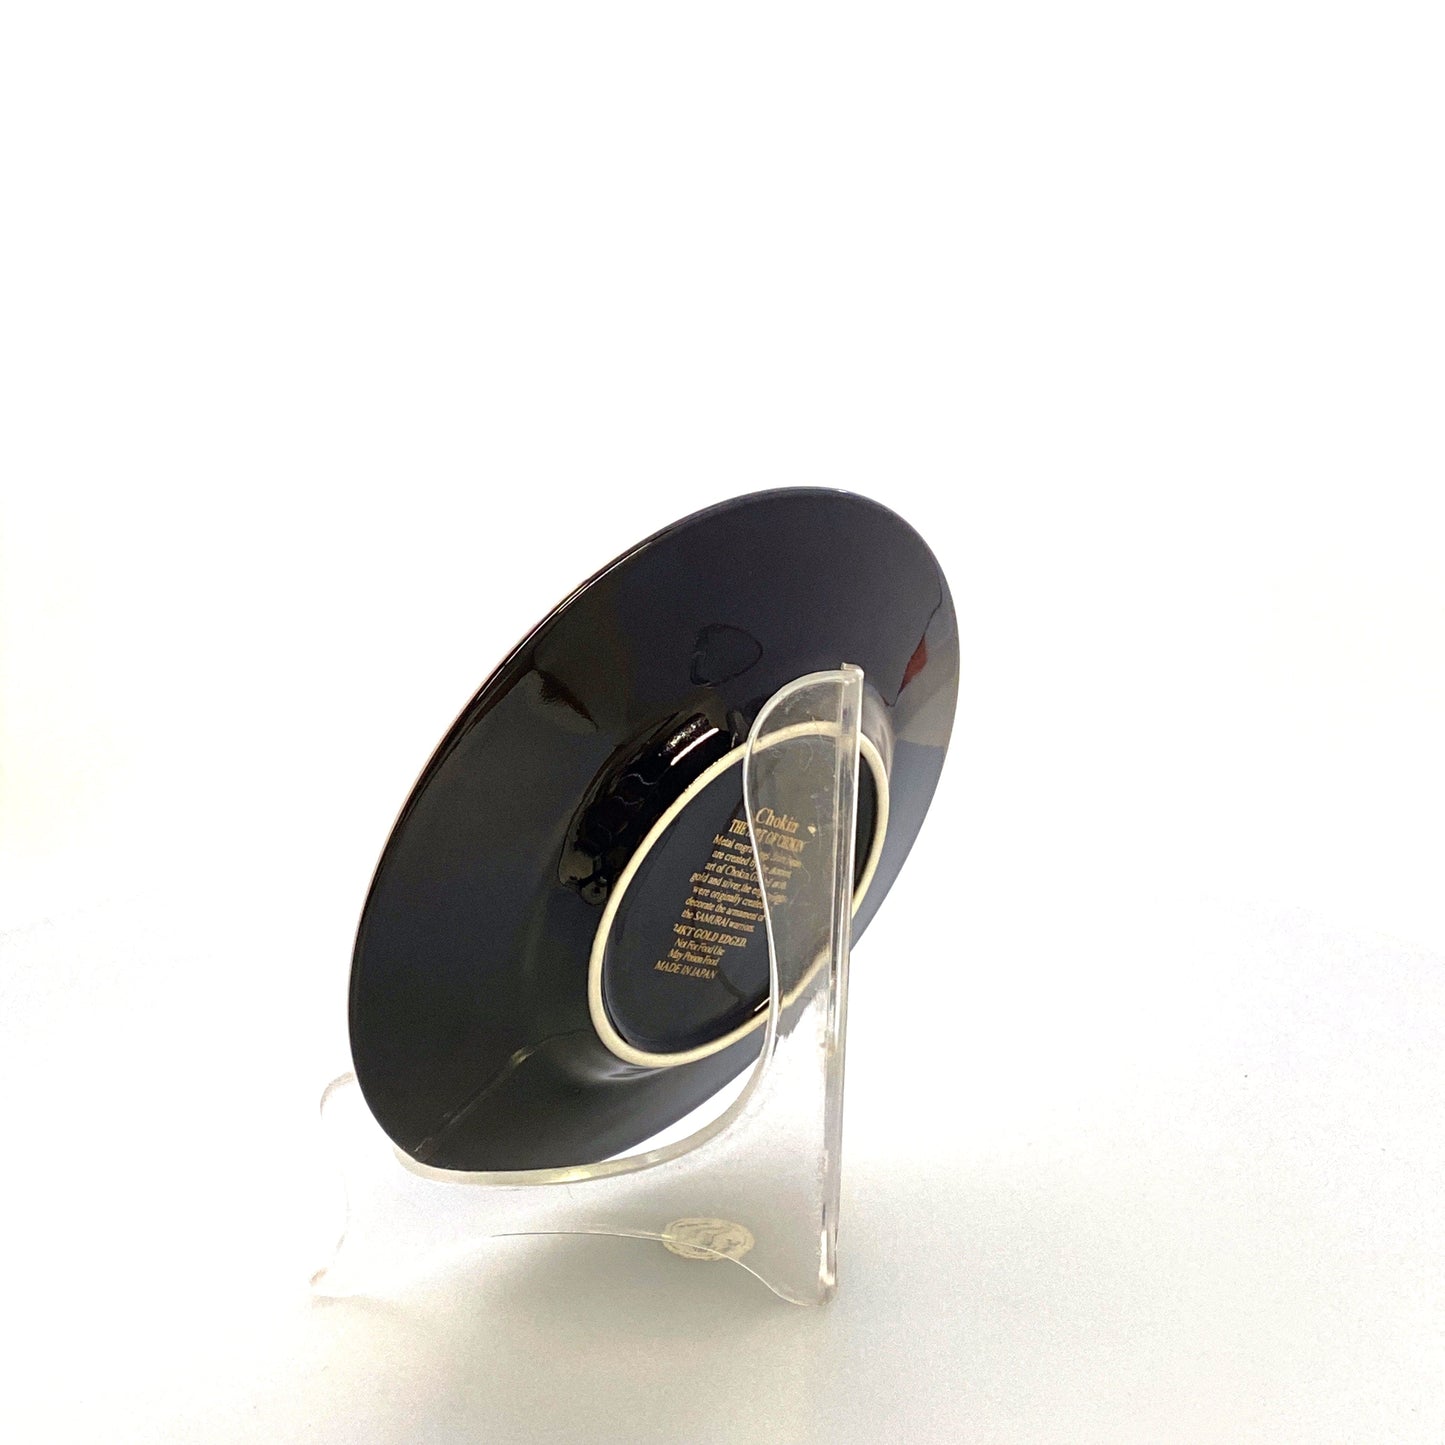 Chokin Souvenir Collectors Plate “Washington, D.C.” 24k Gold Trim Black 5”